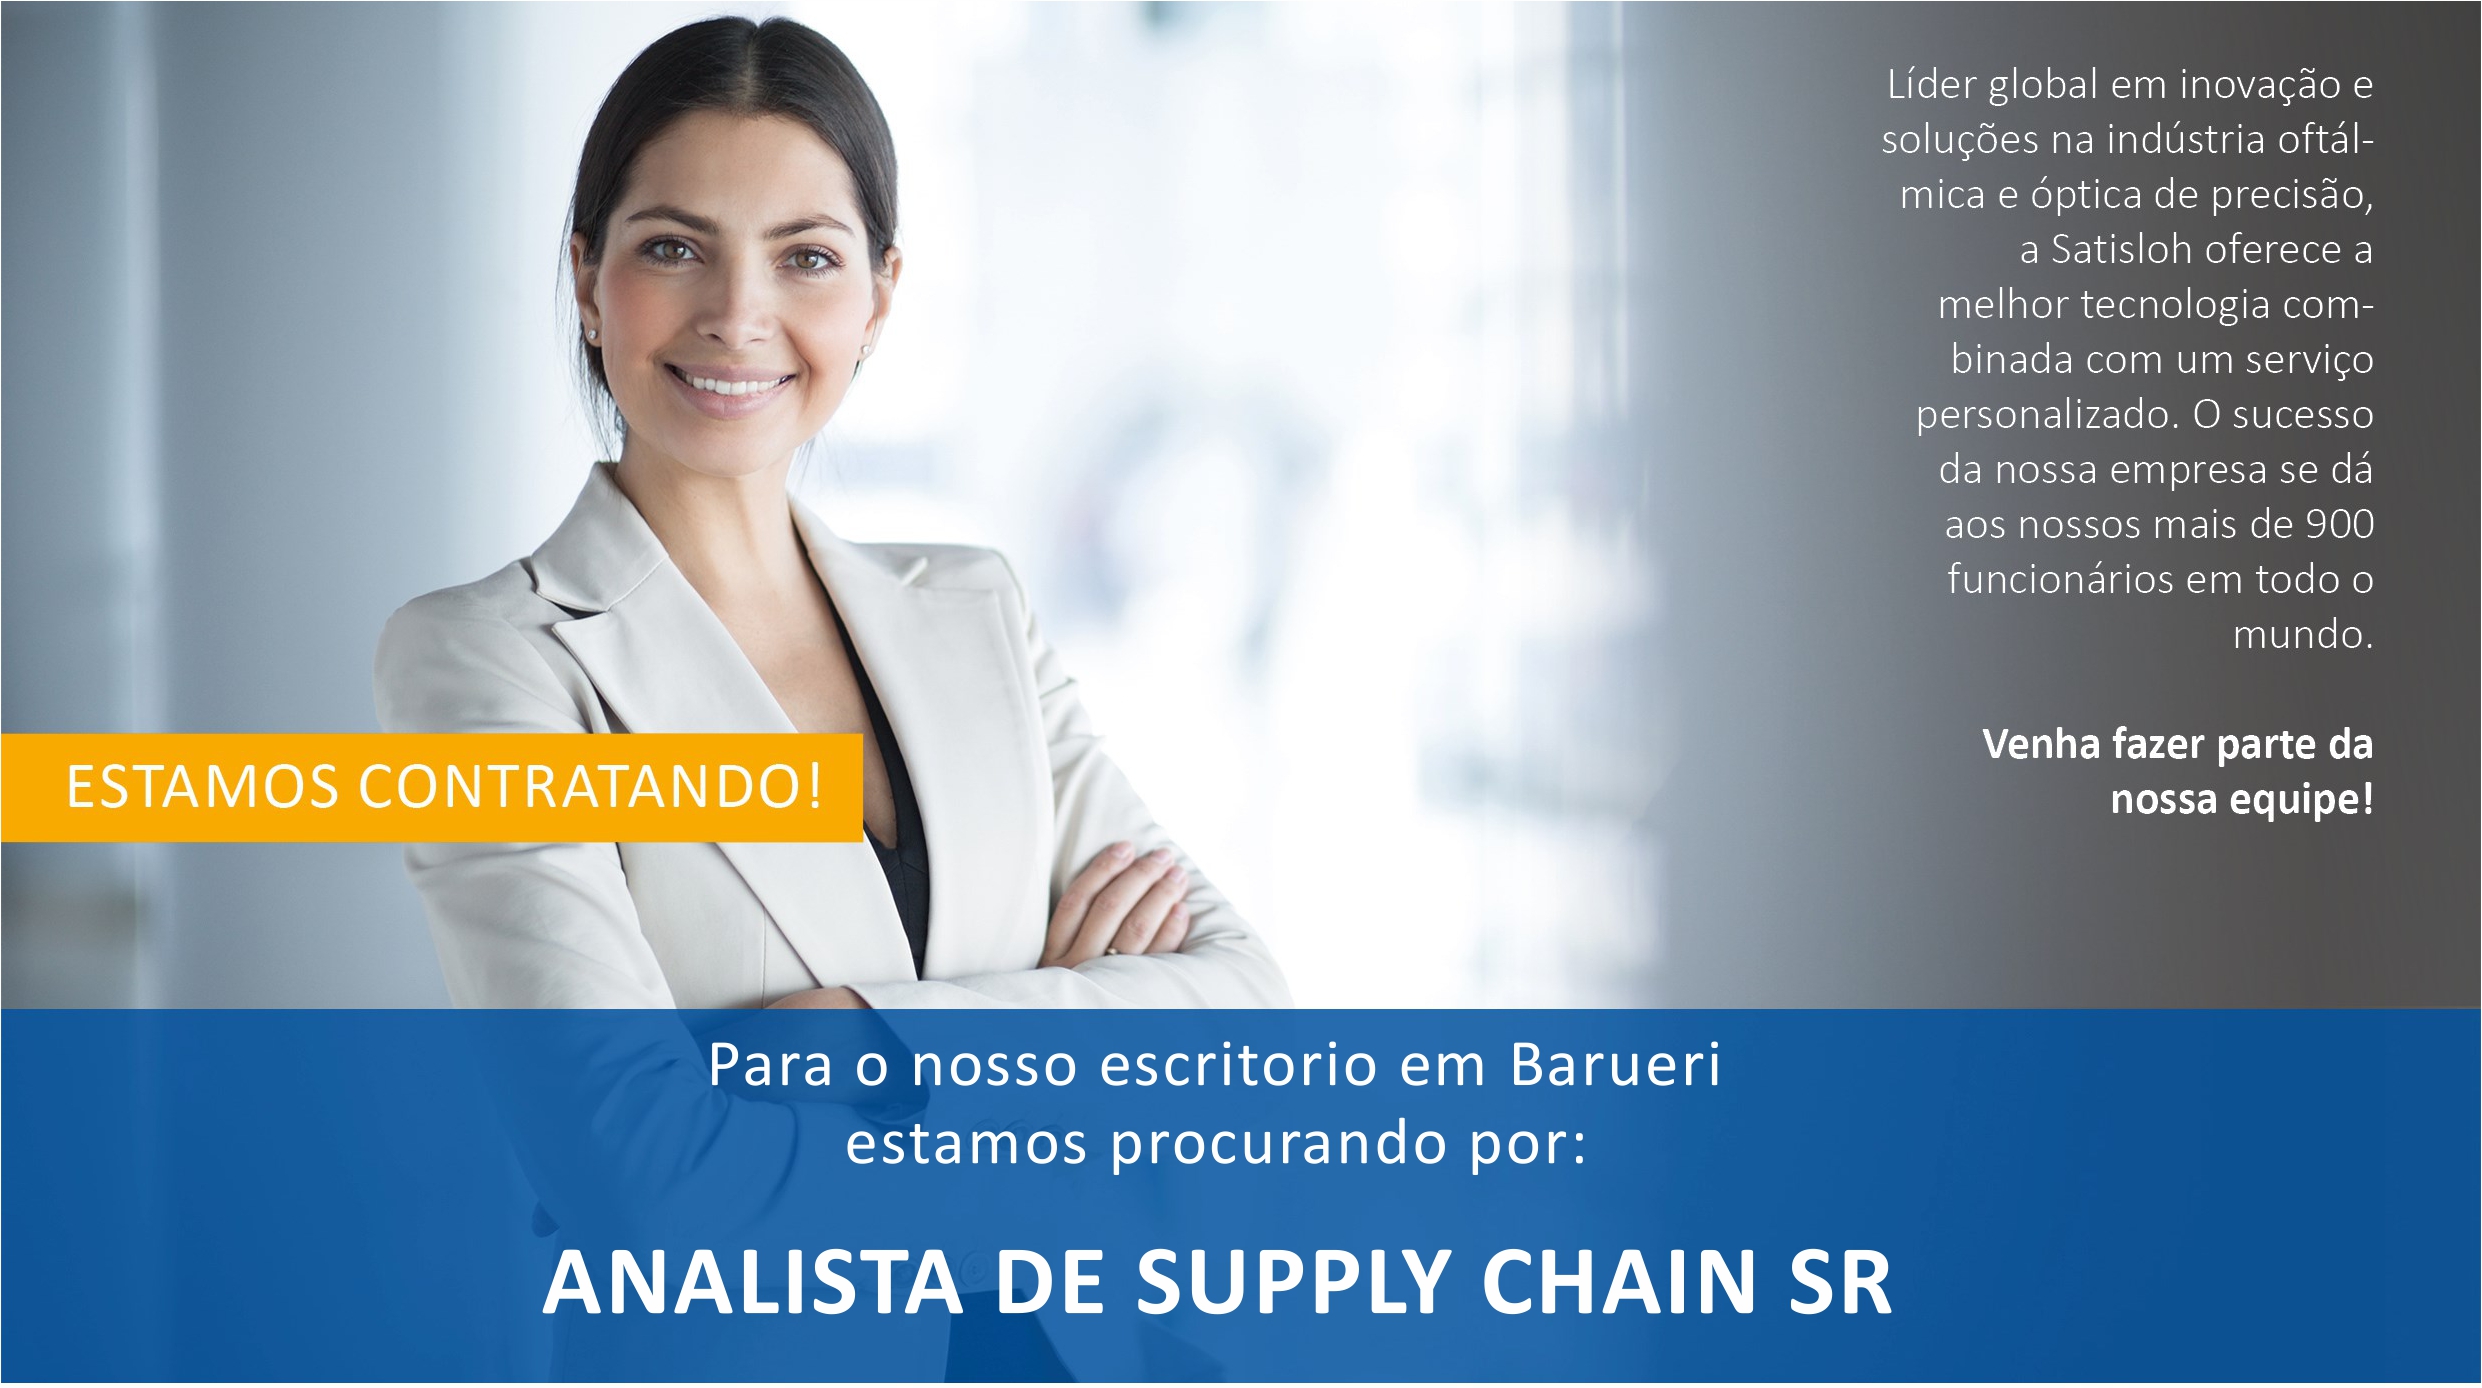 SATISLOH Vaga Supply Chain SR